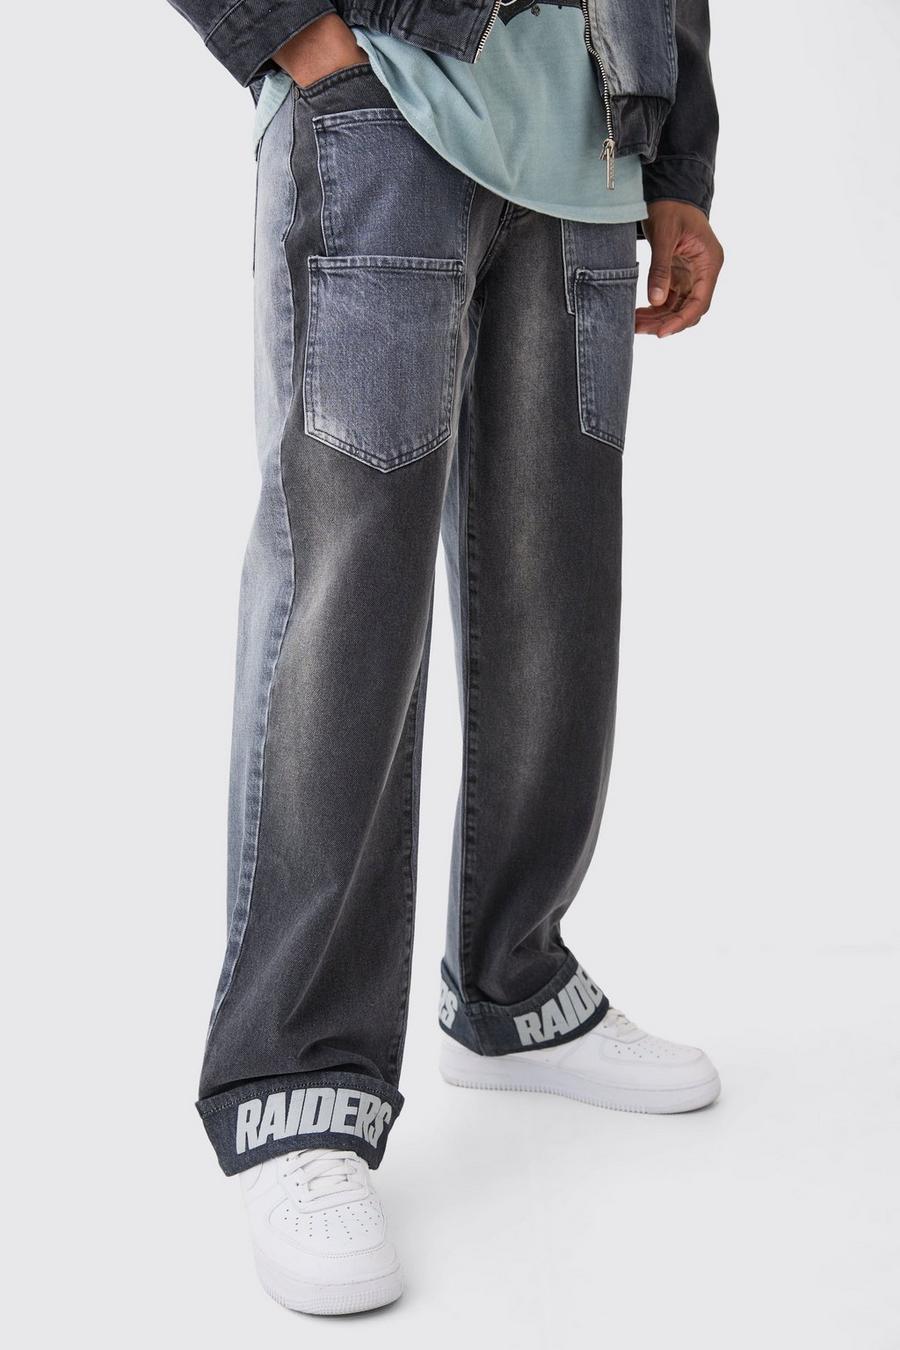 Lockere gespleißte Nfl Raiders Jeans mit Taschen, Charcoal